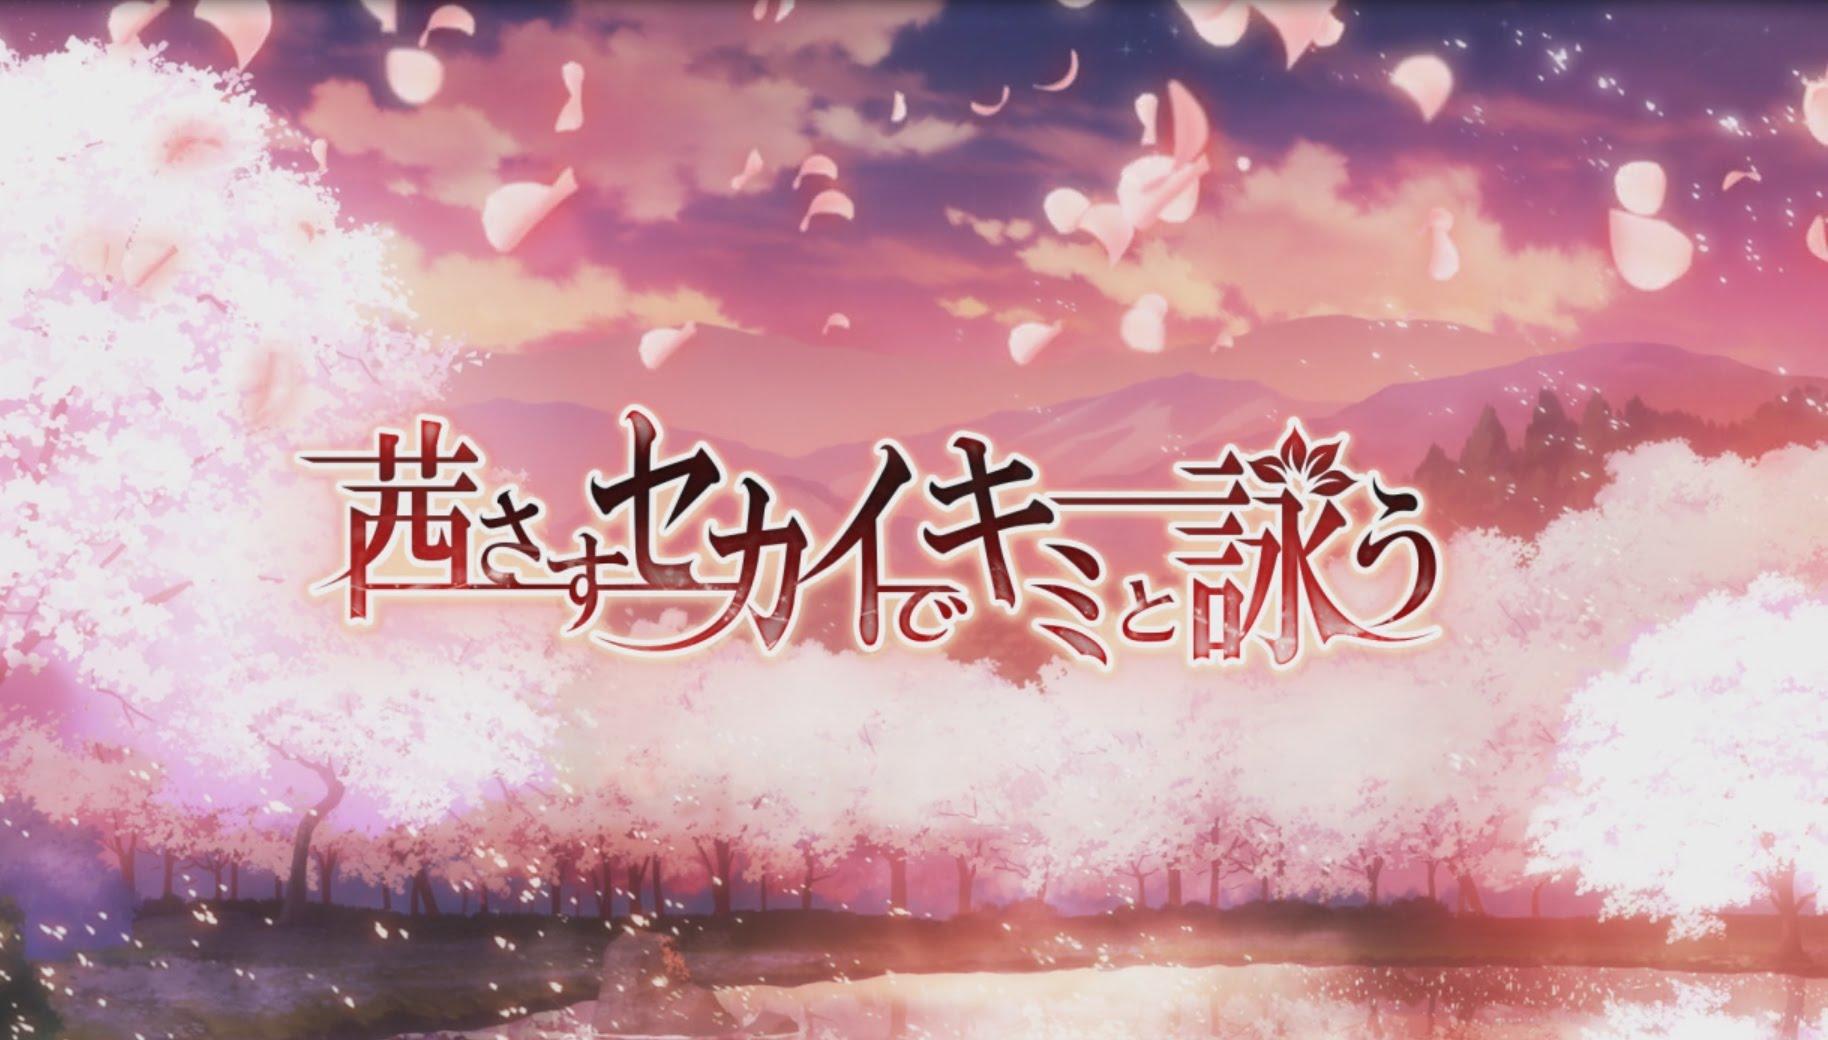 Banner of Akane sasu ကမ္ဘာတွင် သင်နှင့်အတူ သီချင်းဆိုပါ။ 2.40.0